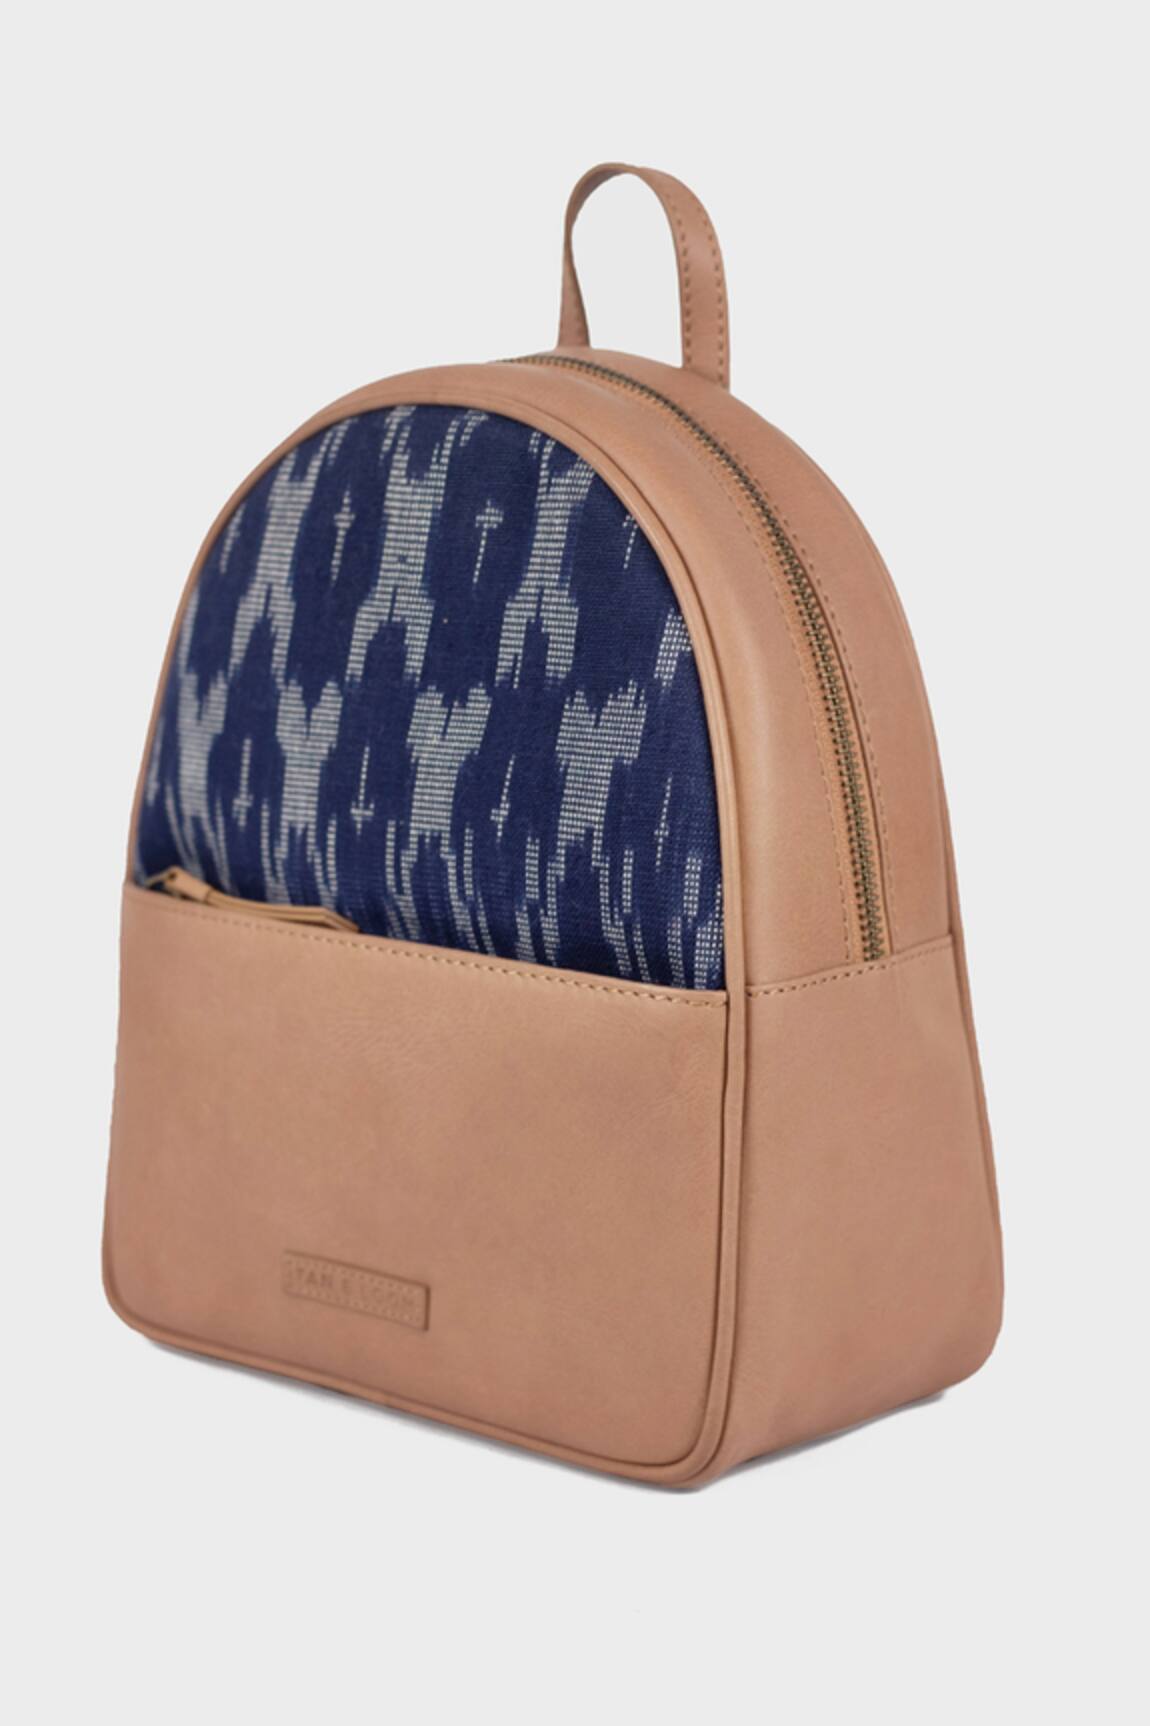 Wanderlust Backpack (Navy Blue), Tan&Loom